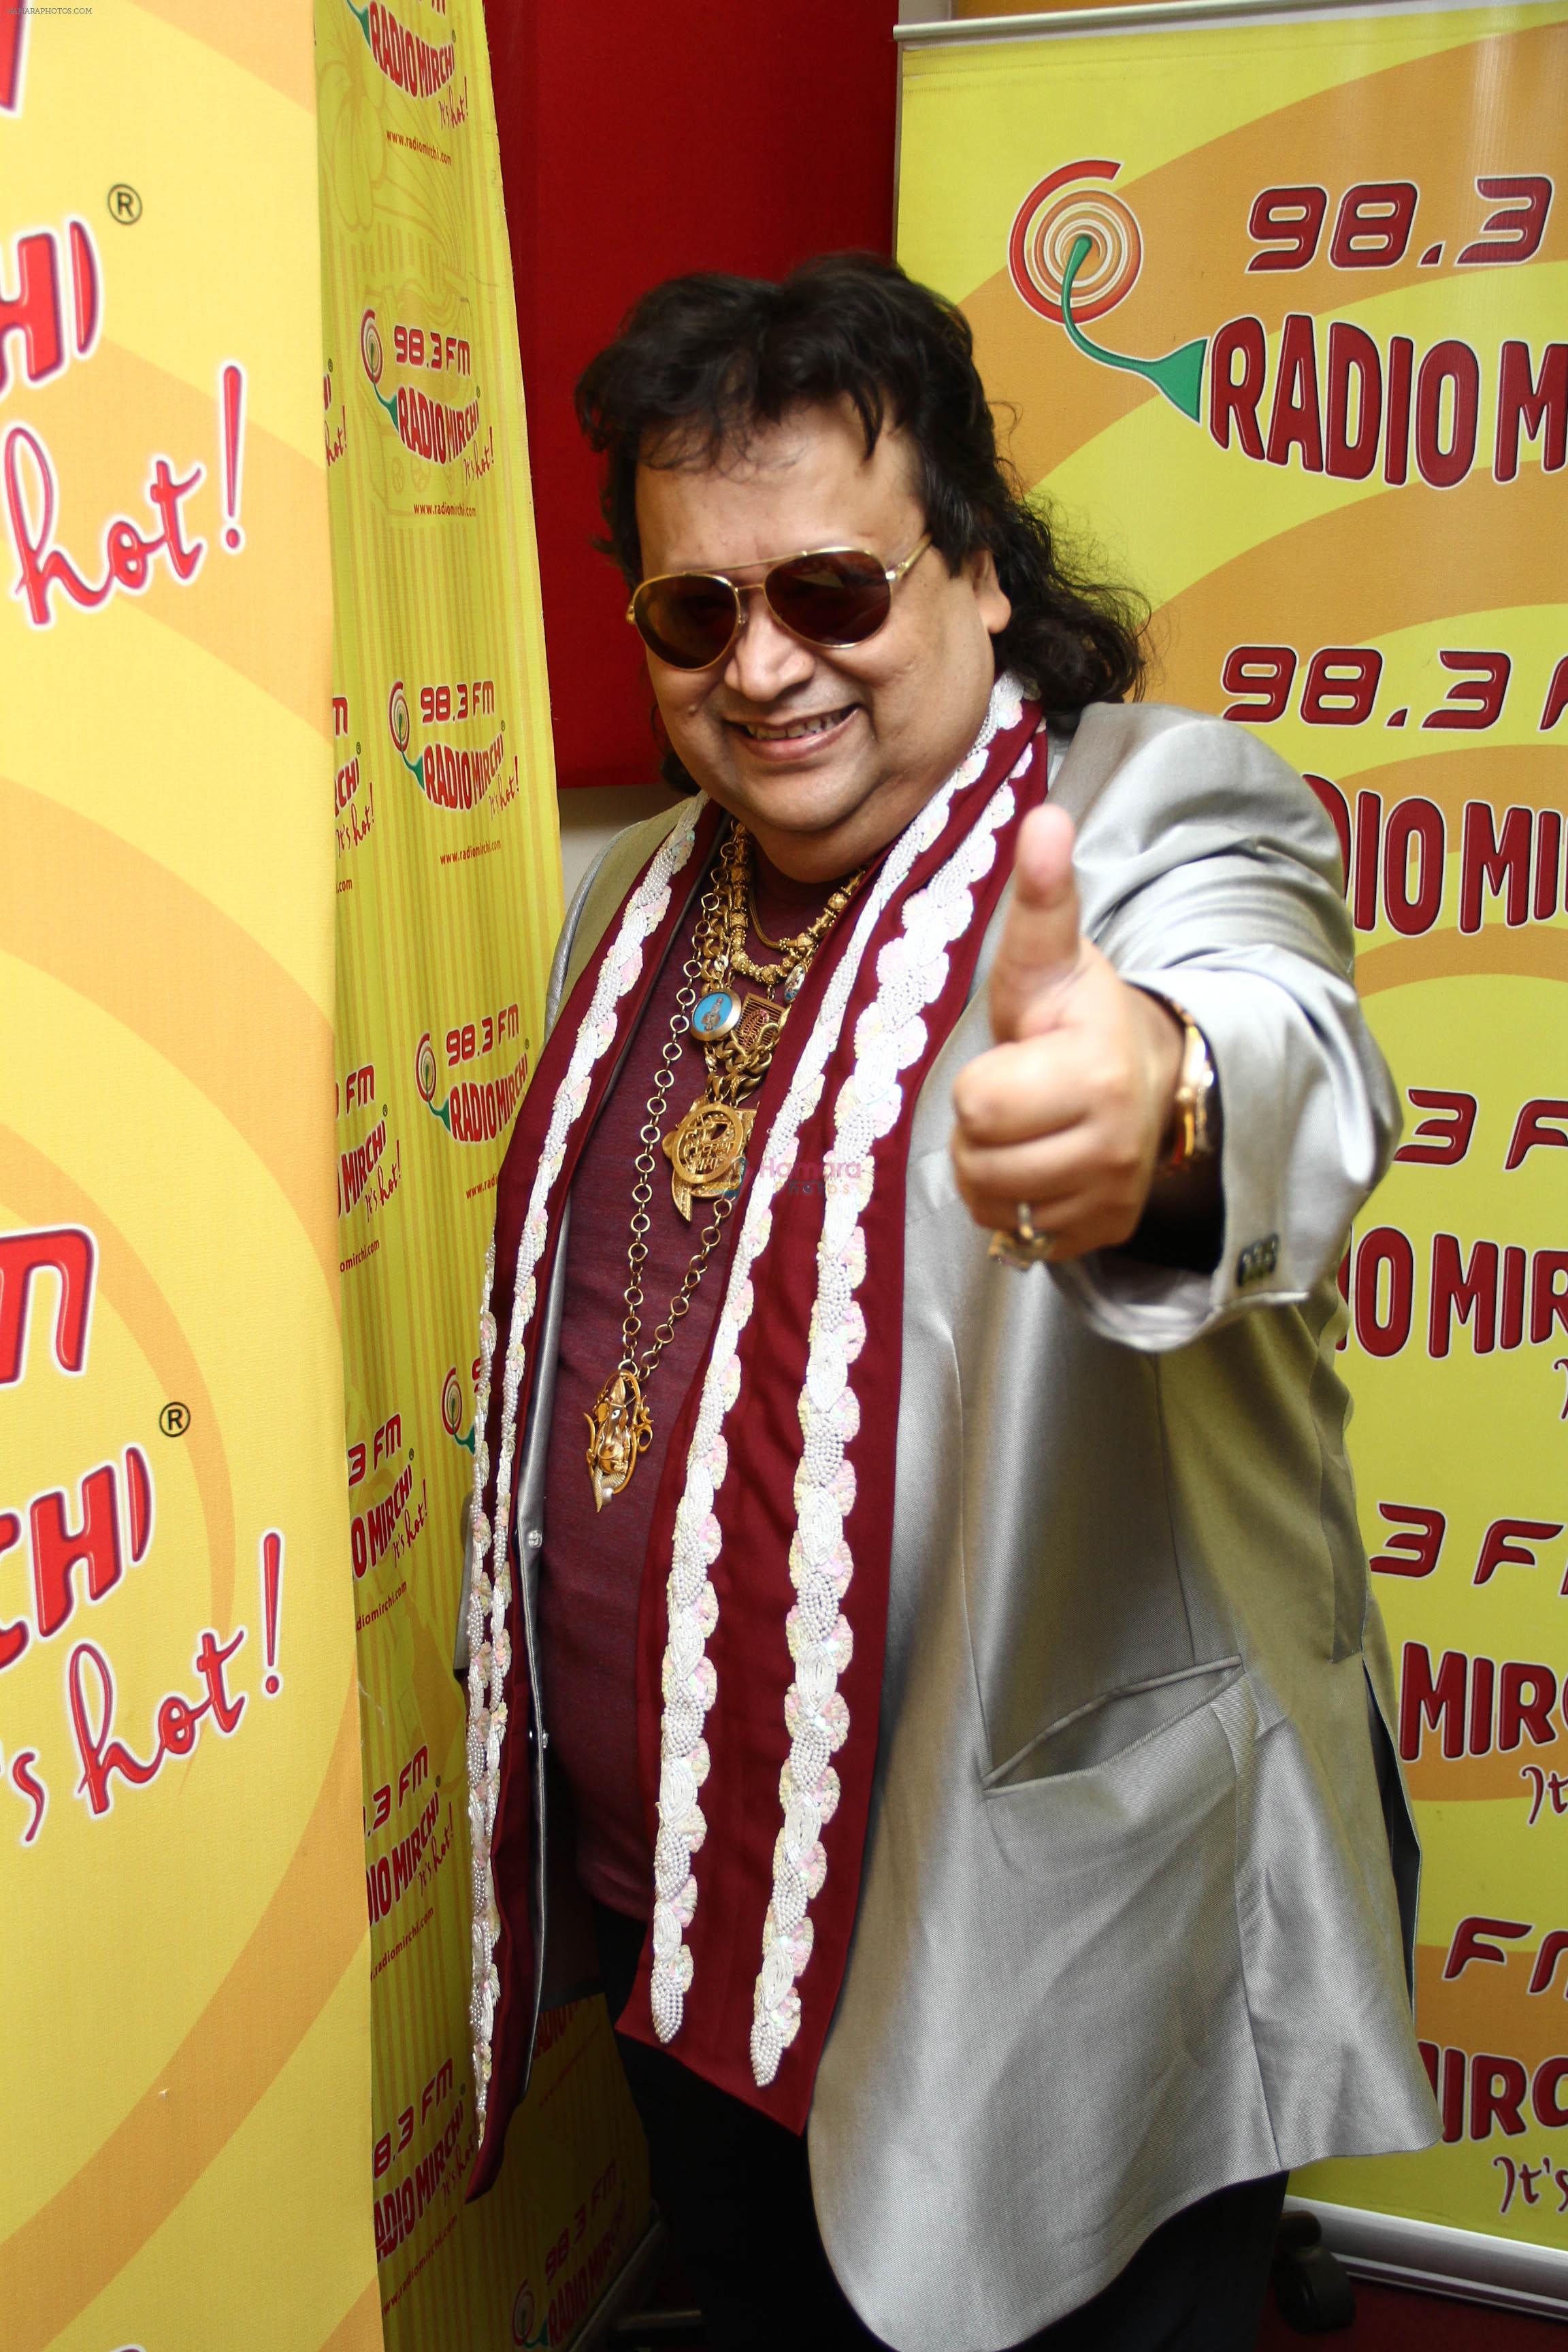 Bappi Lahiri promotes Mirchi Mix DJ Hunt contest at Radio Mirchi on 3rd Oct 2012